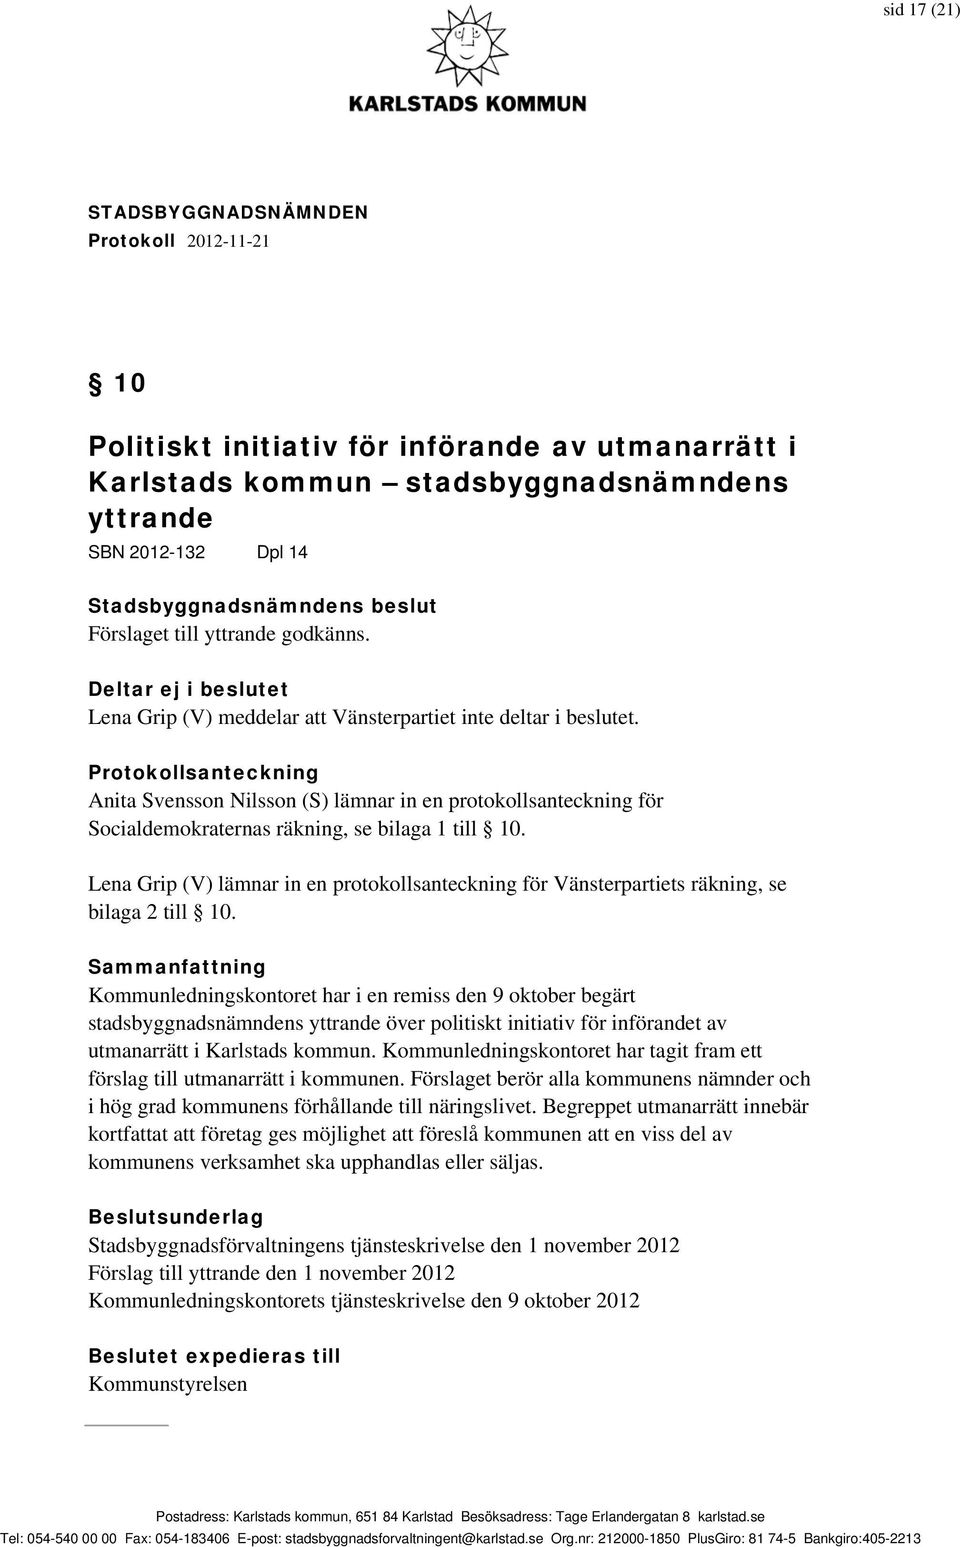 Protokollsanteckning Anita Svensson Nilsson (S) lämnar in en protokollsanteckning för Socialdemokraternas räkning, se bilaga 1 till 10.